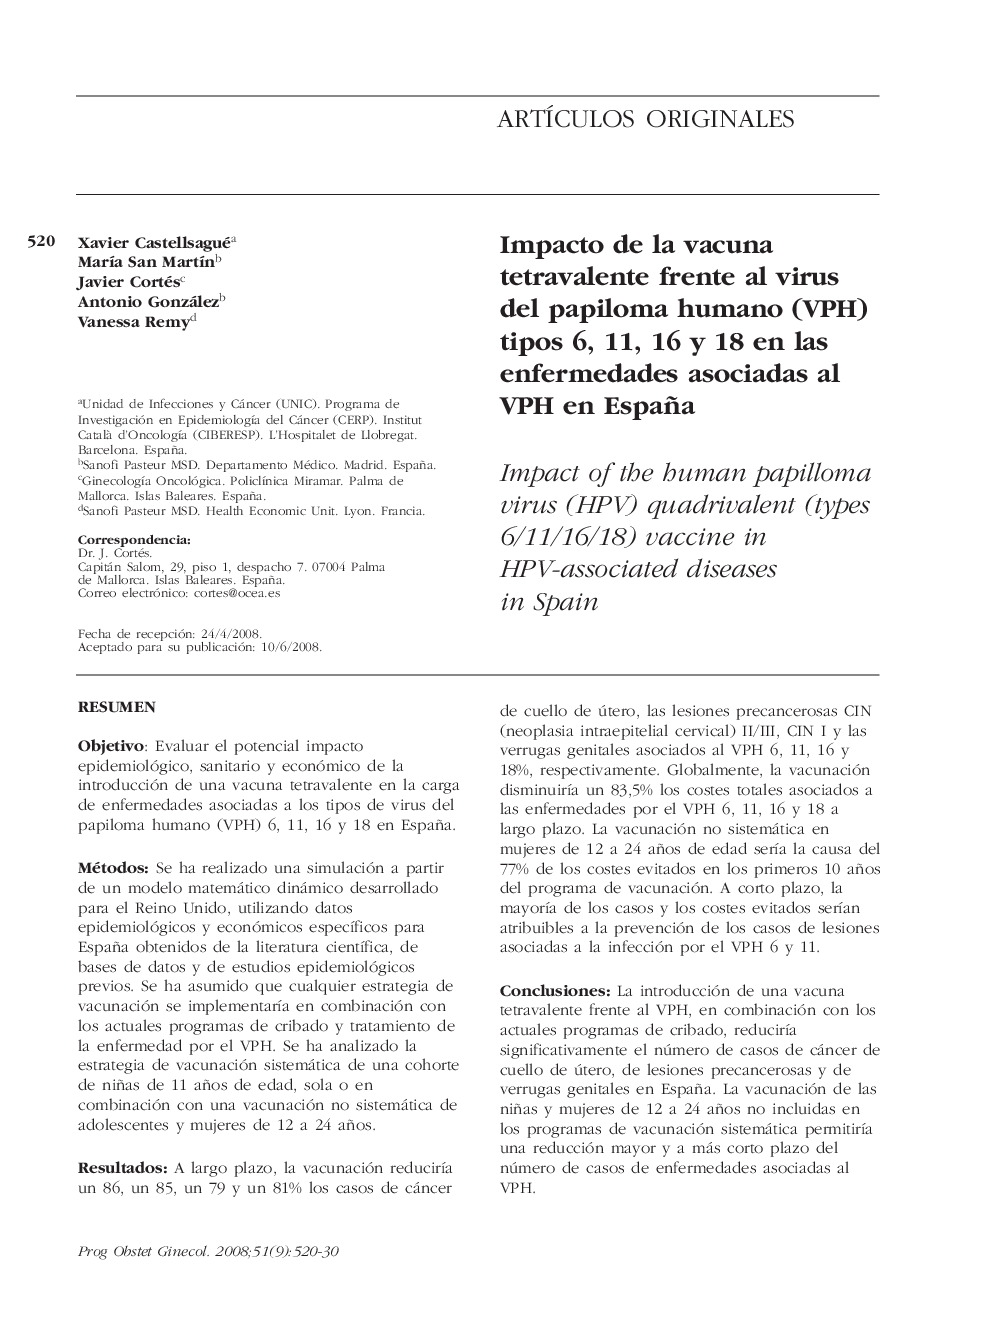 Impacto de la vacuna tetravalente frente al virus del papiloma humano (VPH) tipos 6, 11, 16 y 18 en las enfermedades asociadas al VPH en España